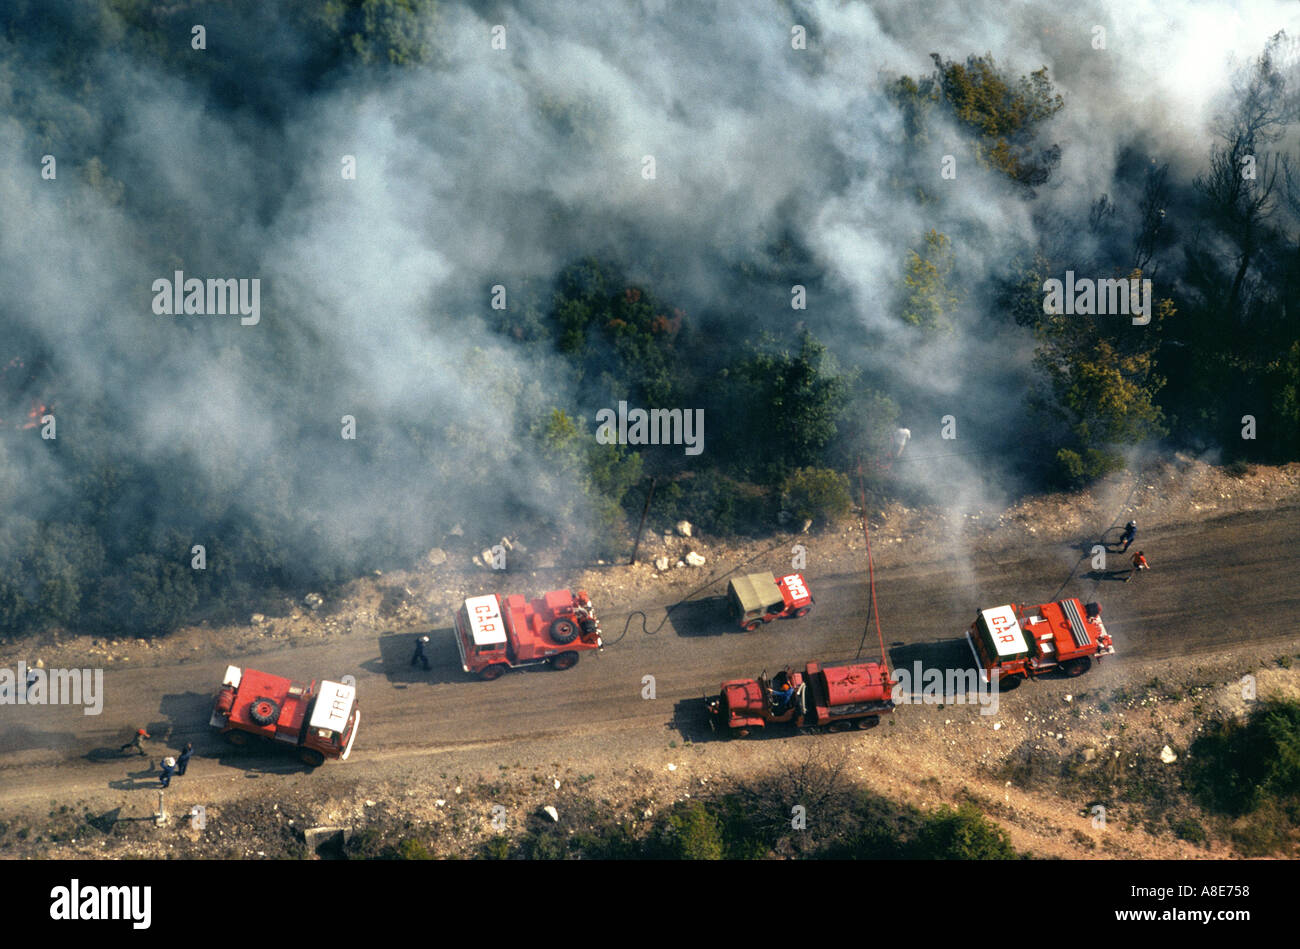 Vue aérienne de pompiers et des camions de combattre un feu, la fumée des incendies de forêt, chemin de terre, Provence, France, Europe, Banque D'Images